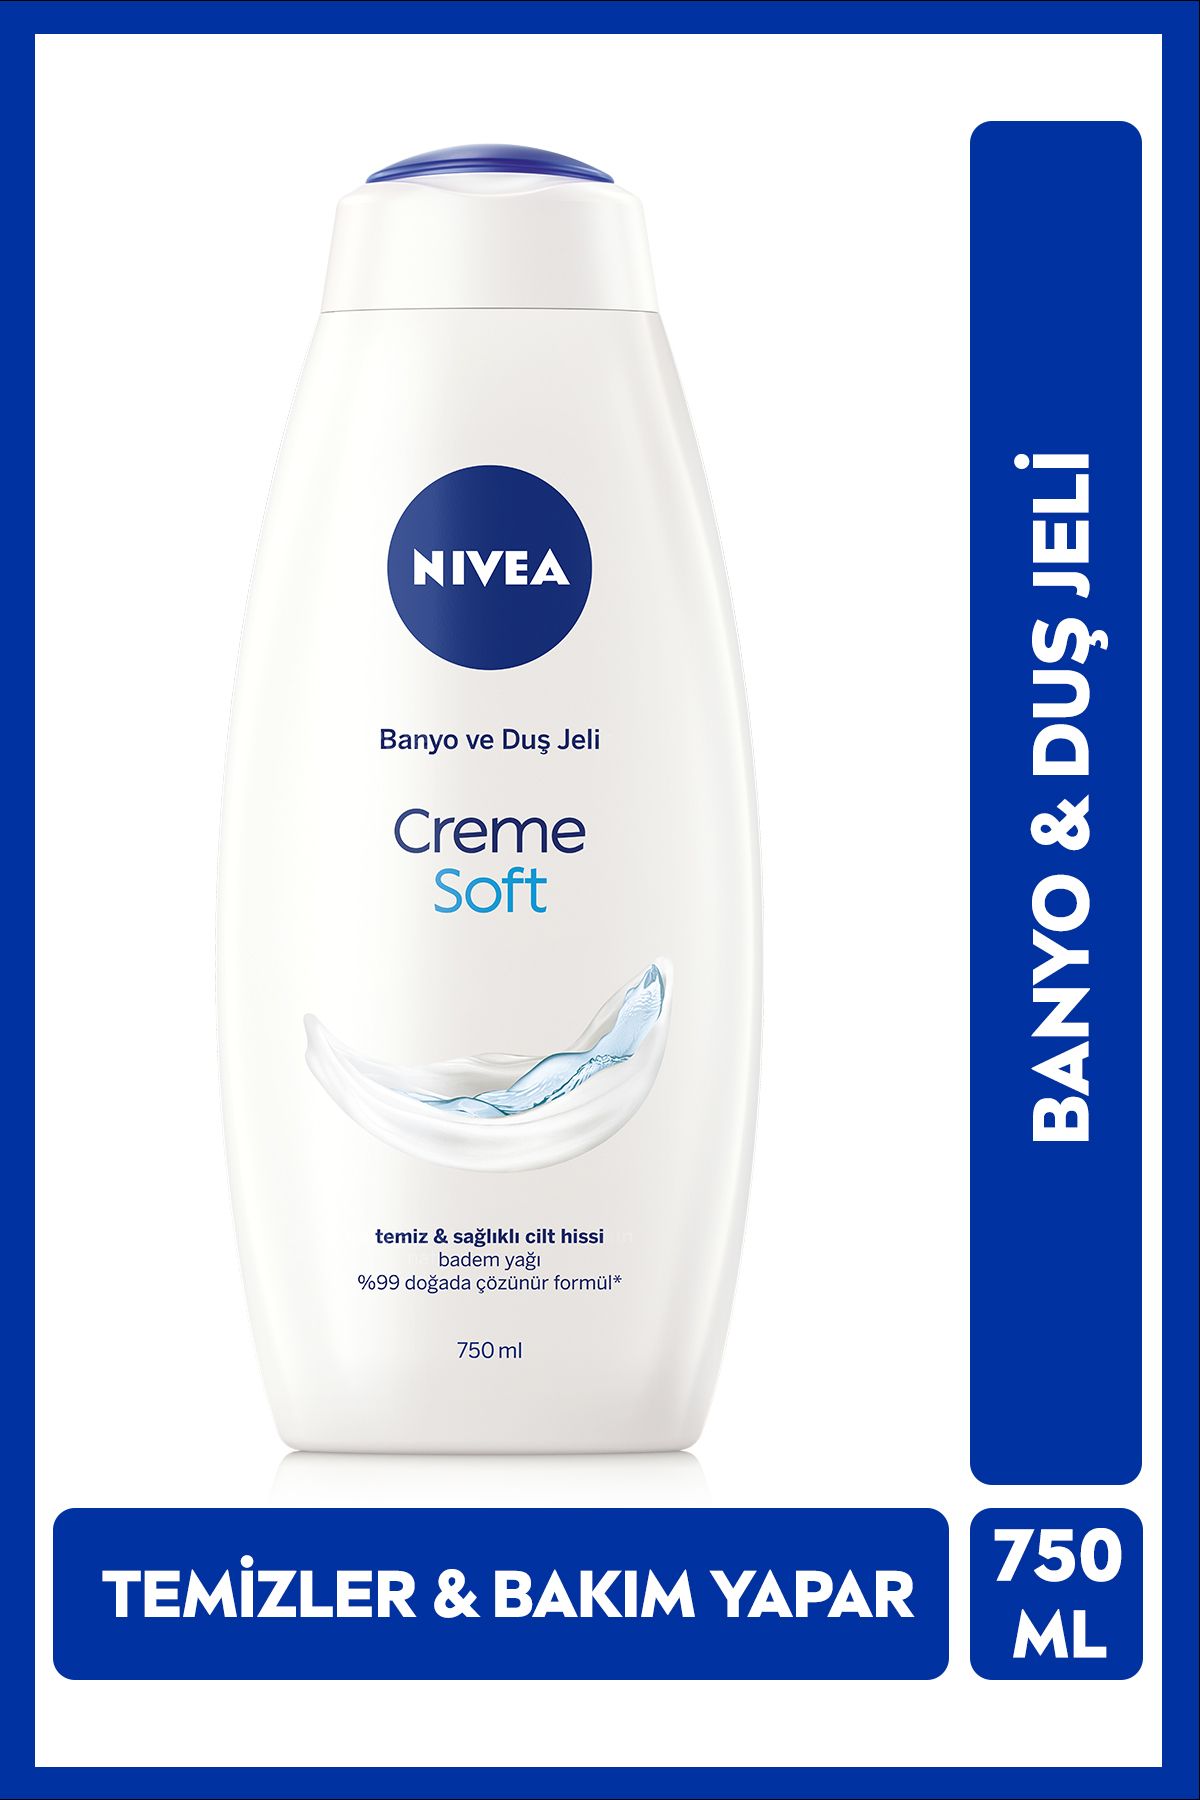 NIVEA Creme Soft Kremsi Dokunuş Banyo Ve Duş Jeli 750ml, Vücut Nemlendirici, Badem Yağı, Pürüzsüz Cilt